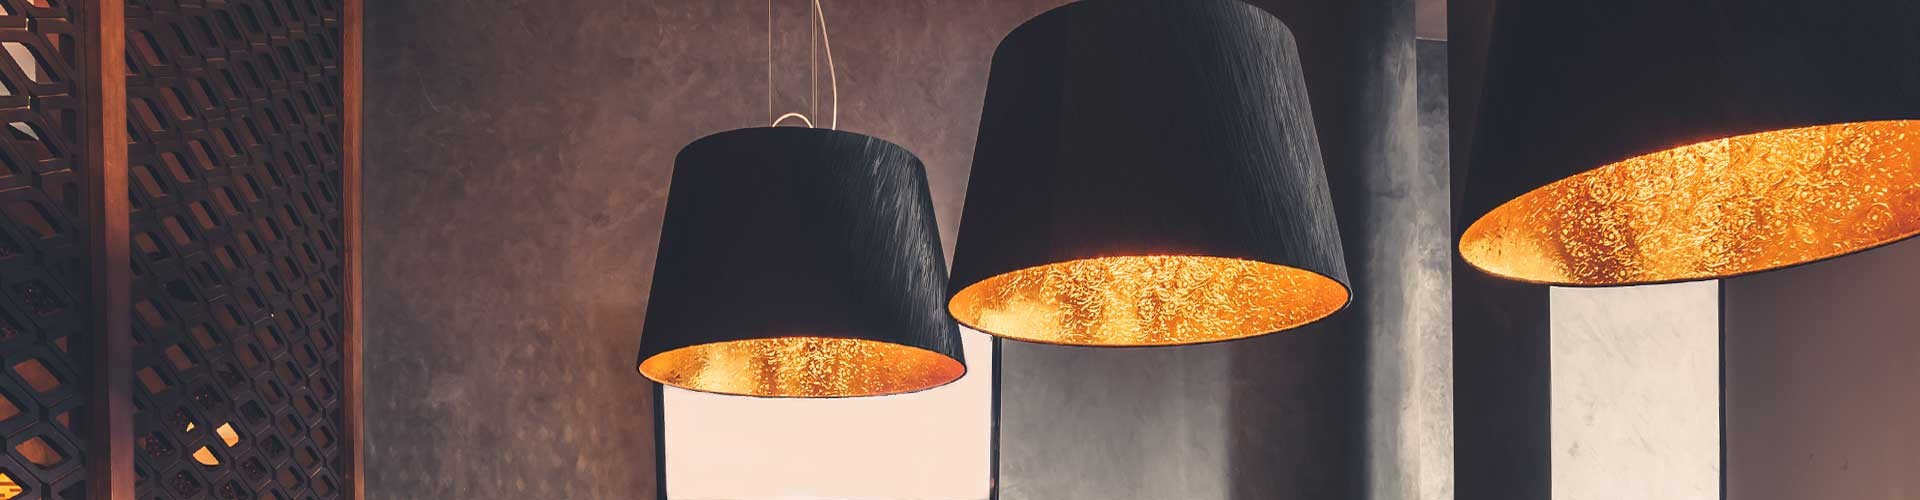 Lámparas de Diseño | Iluminación de Diseño